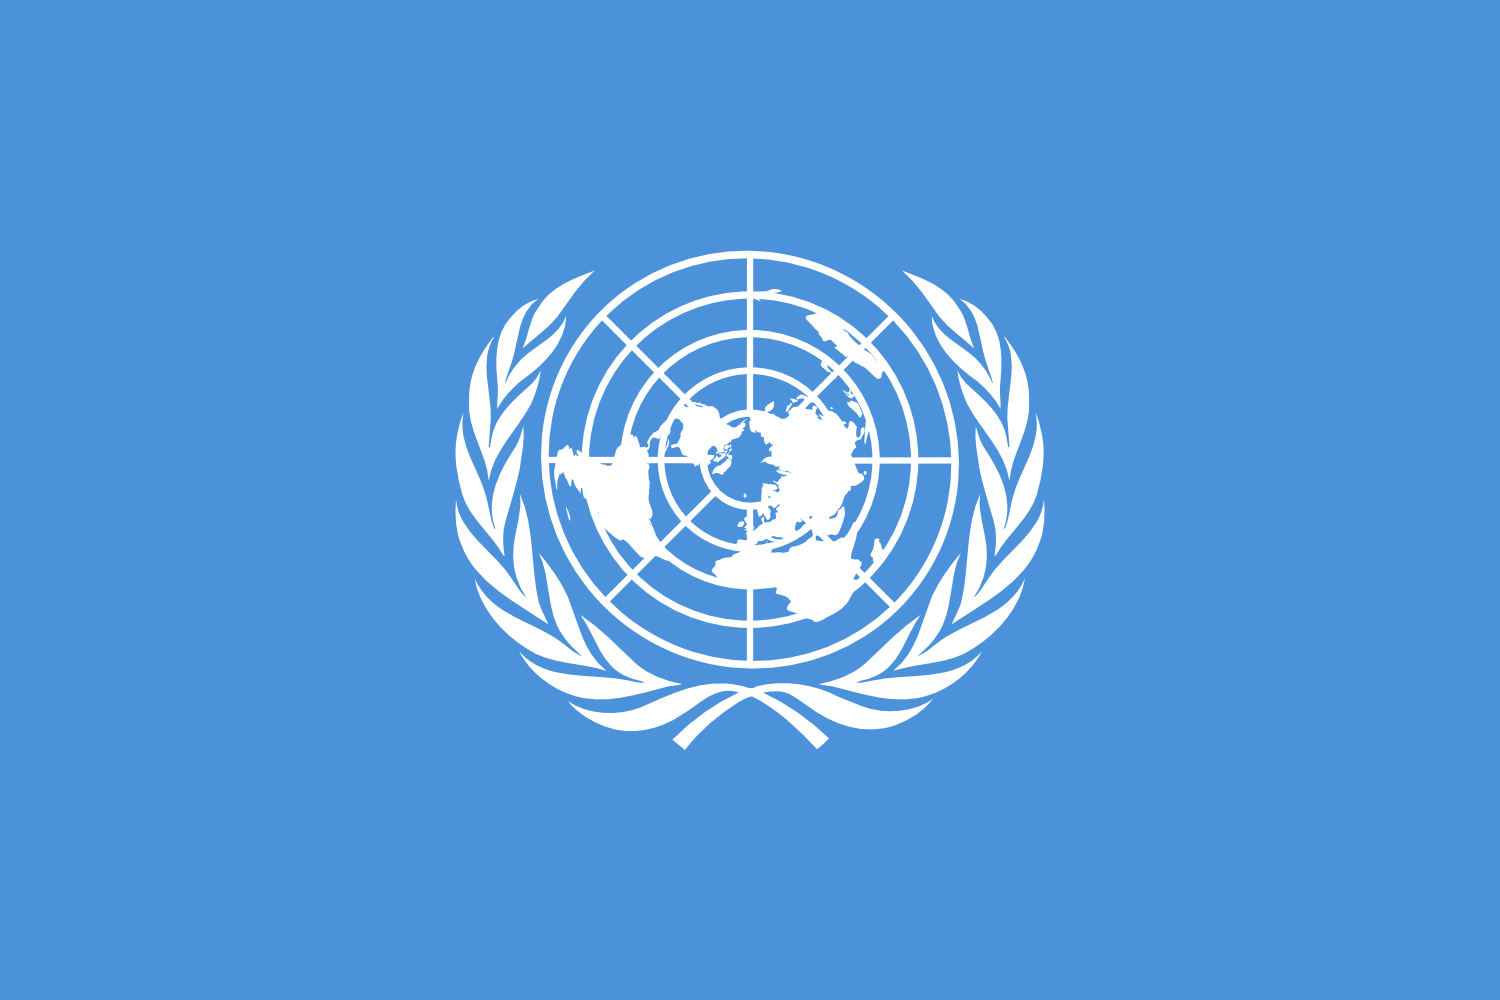 聯合國安理會第2371號決議